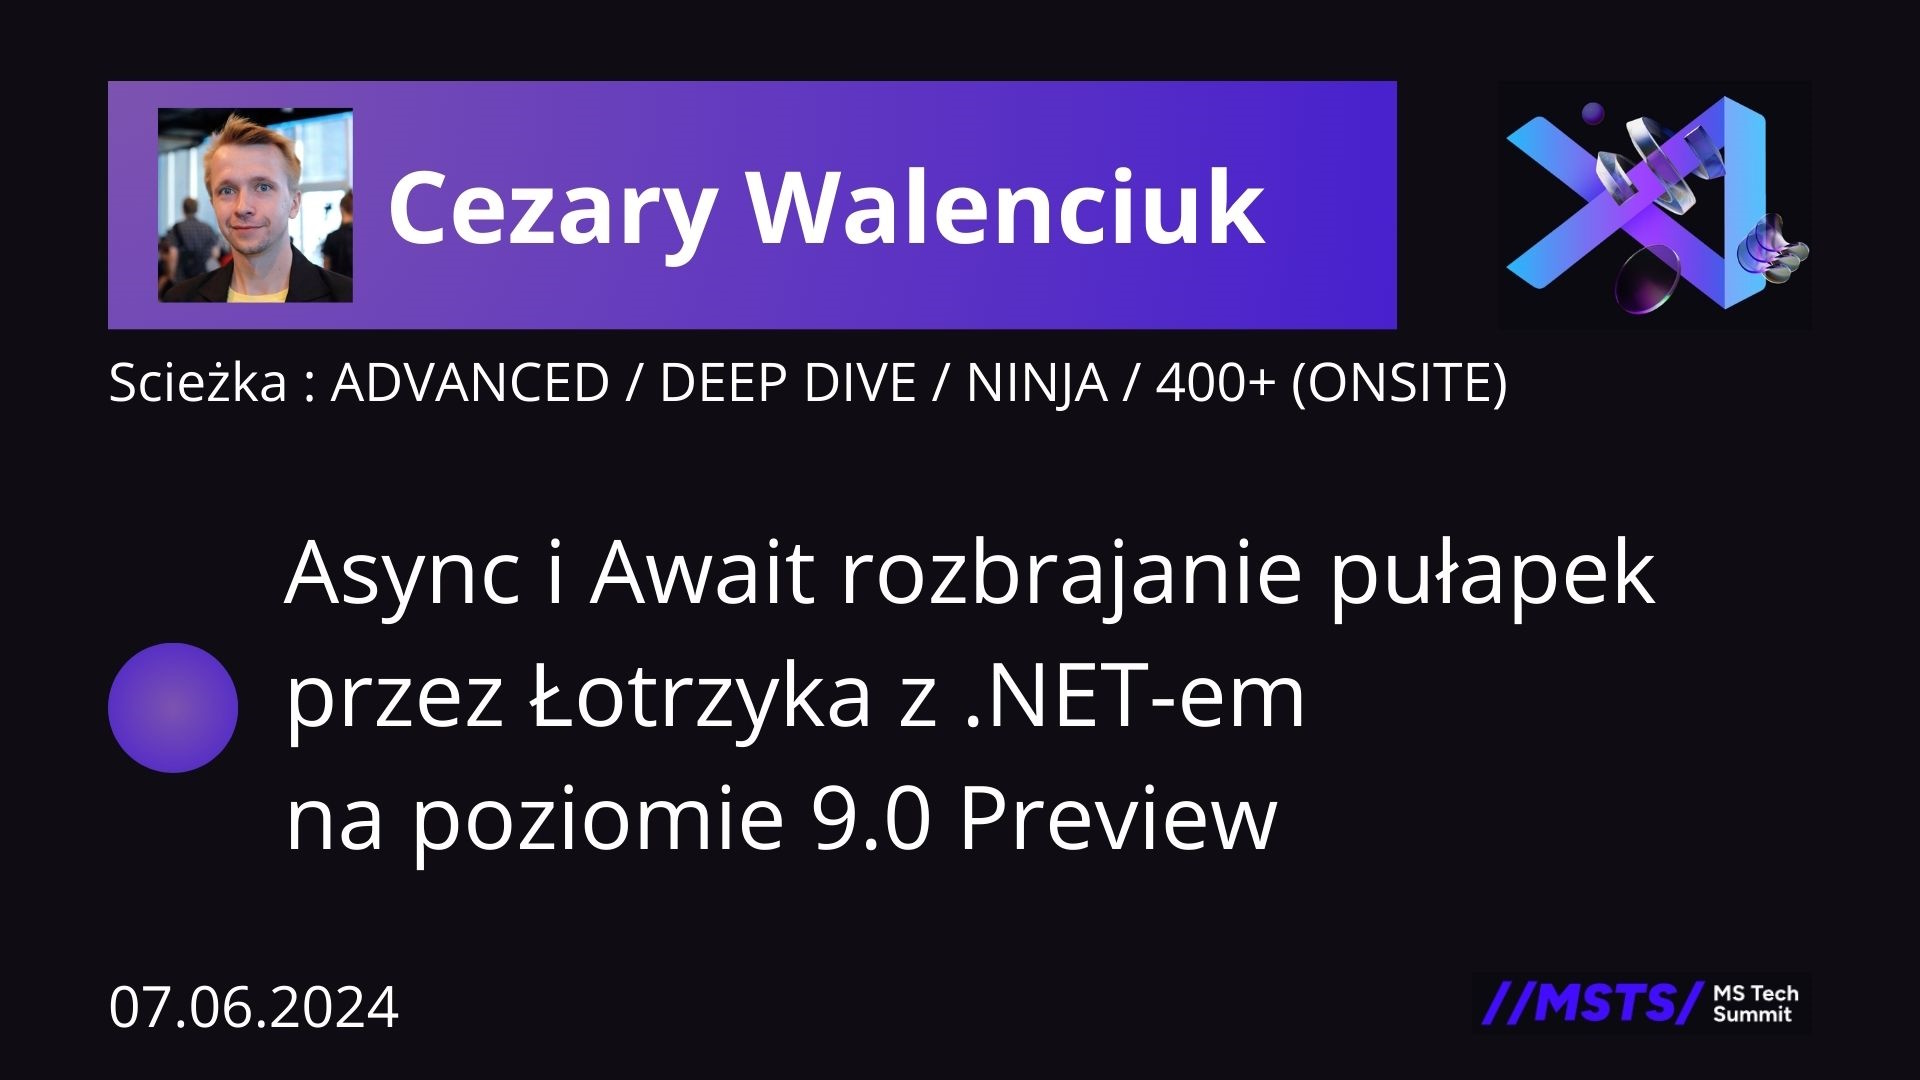 Async i Await rozbrajanie pułapek przez Łotrzyka z .NET-em na poziomie 9.0 Preview 4 obrazek reklamujący wydarzenie